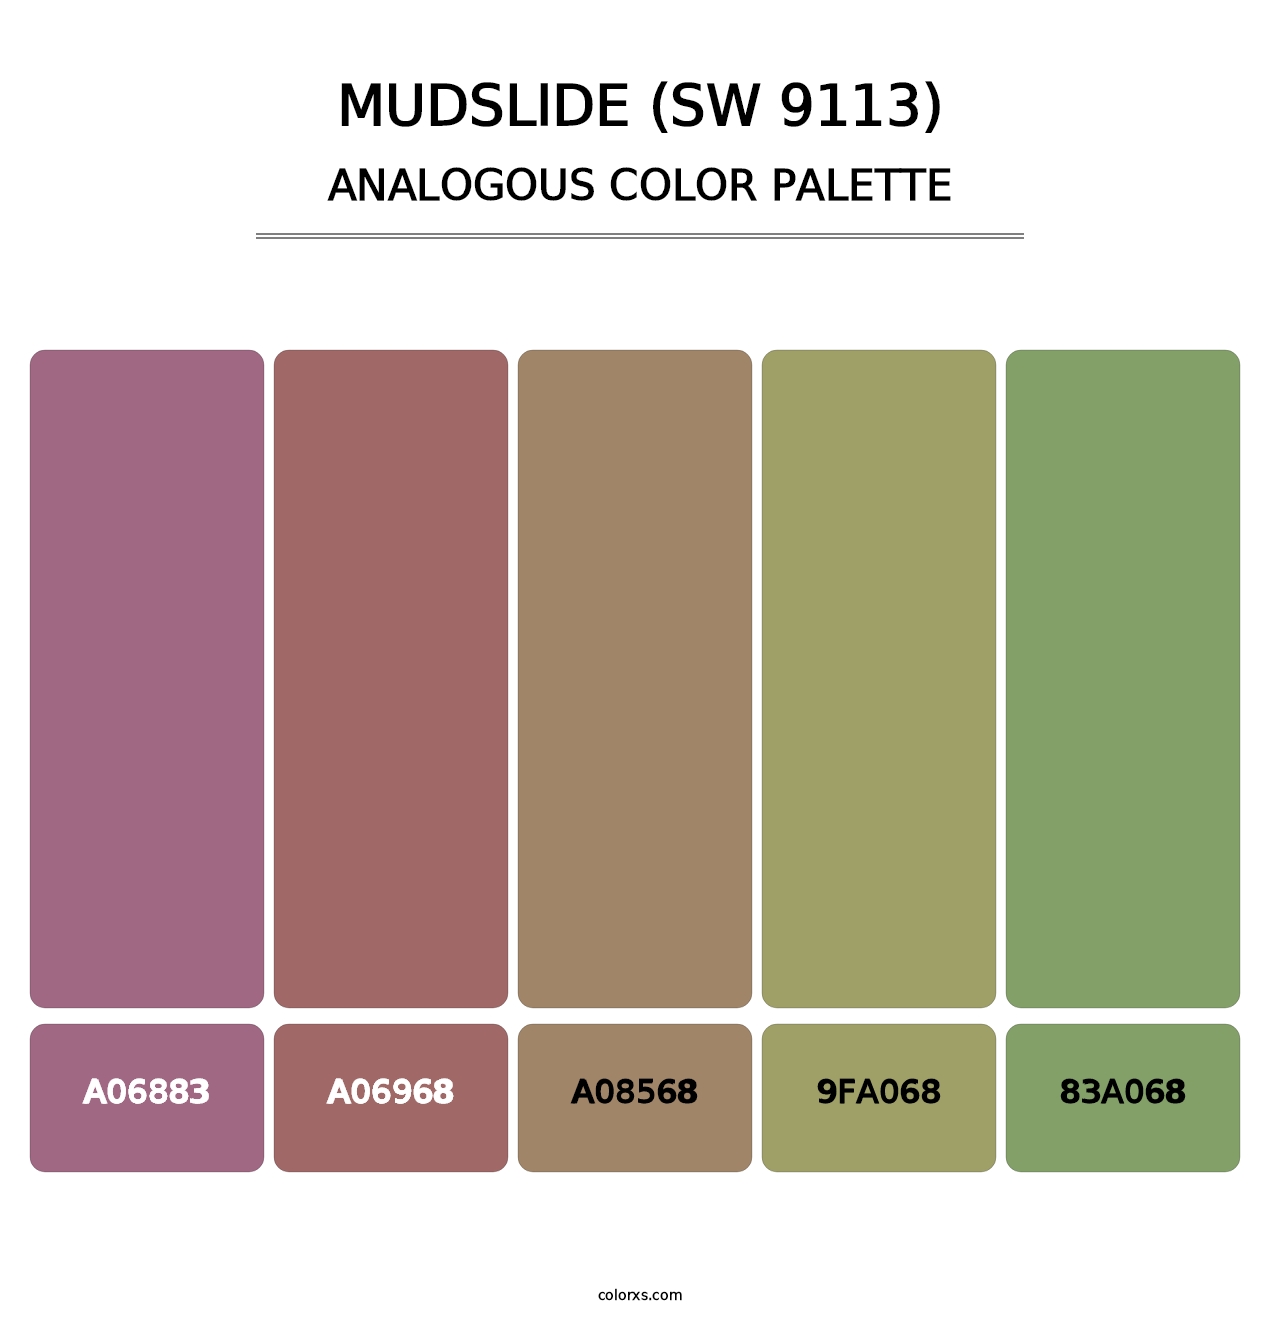 Mudslide (SW 9113) - Analogous Color Palette